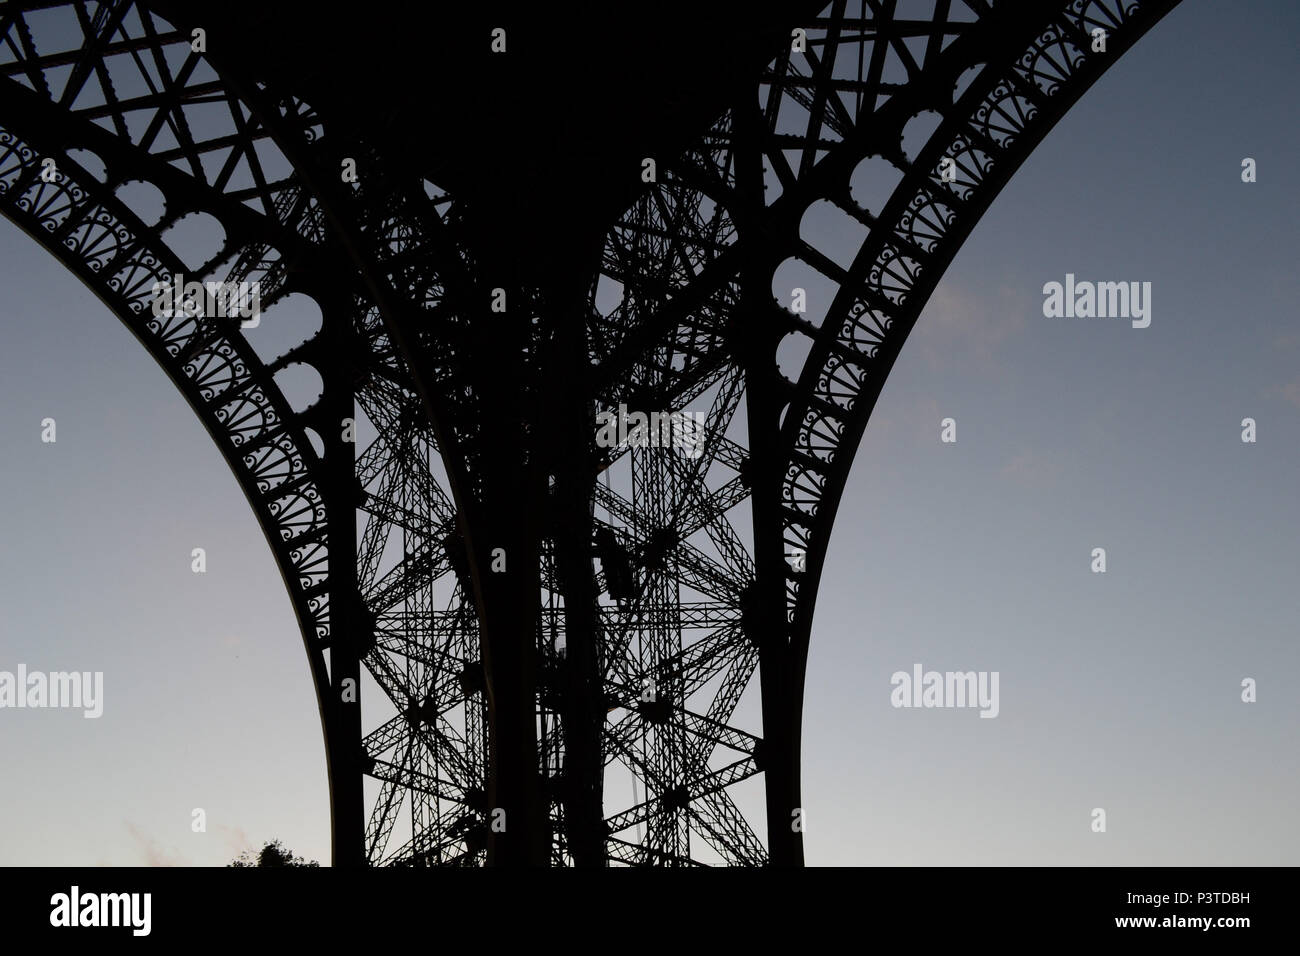 PARIS, FRANÇA - 16.10.2013: PARIS - Contraluz. Detalhe da estrutura da Torre Eiffel. (Foto: Fontana / Fotoarena) Stock Photo